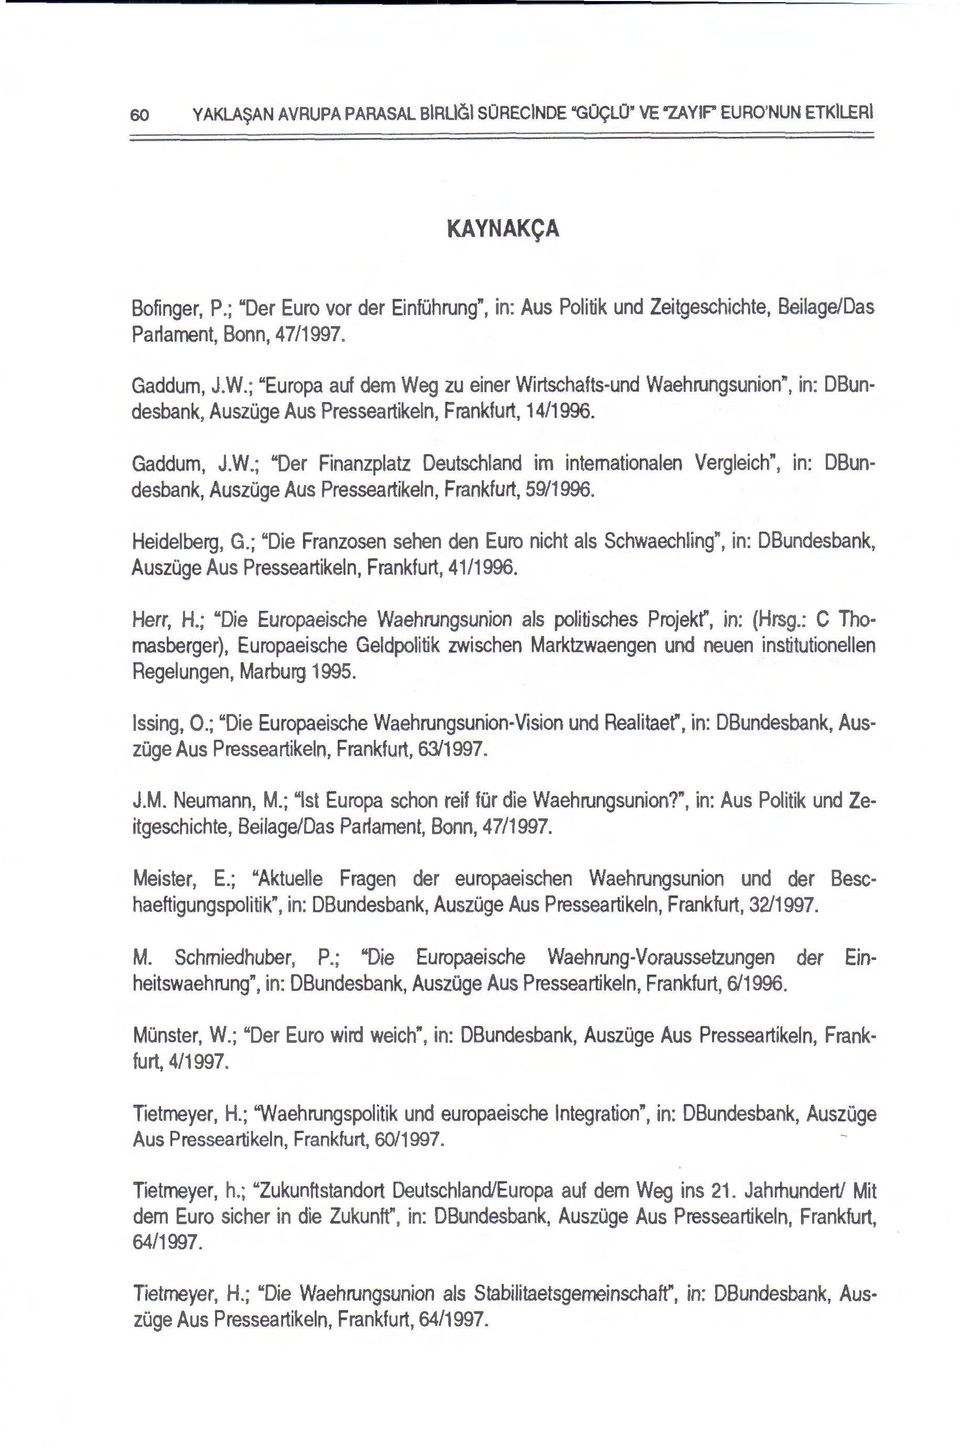 ; "Europa auf dem Weg zu einer Wirtschafts-und Waehrungsunion", in: DBundesbank, AuszOge A us Presseartikeln, Frankfurt, 14/1996. Gaddum, J.W.; "Der Finanzplatz Deutschland im intemationalen Vergleich", in: DBundesbank, AuszOge Aus Presseartikeln, Frankfurt, 59/1996.